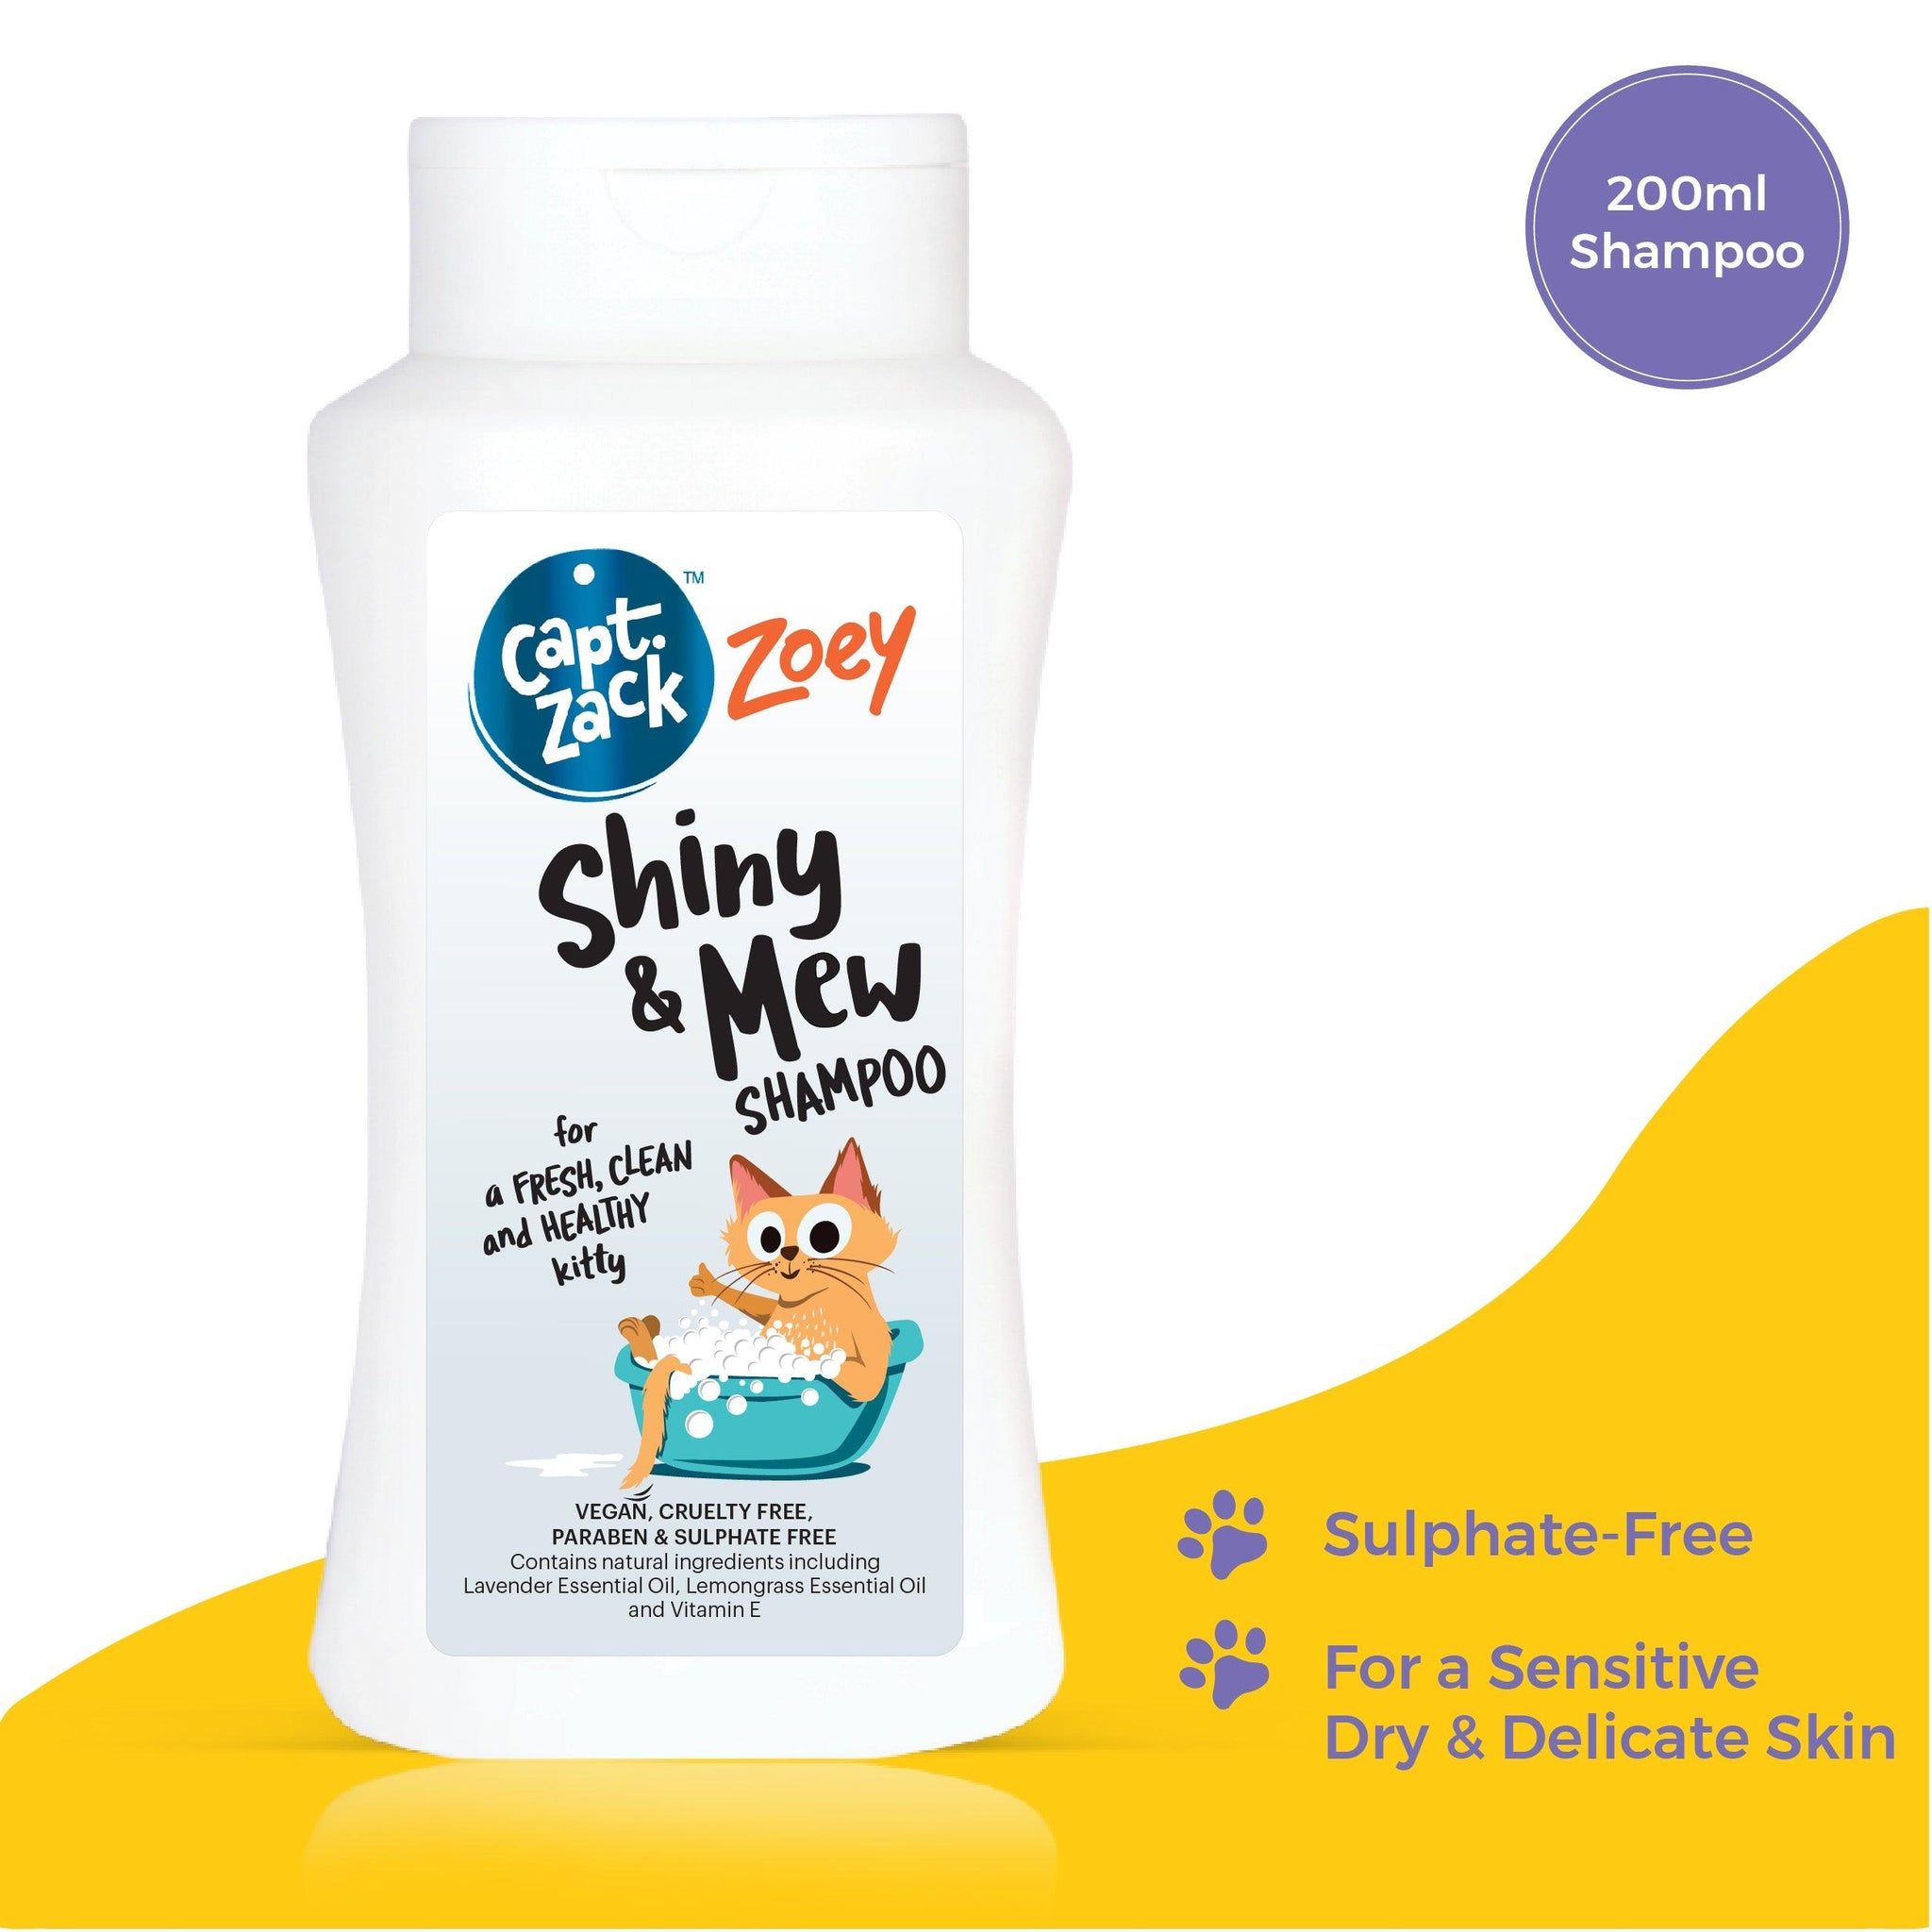 Zoey Shiny & Mew Sulphate Free Kitten Shampoo, 200ml - Captain Zack